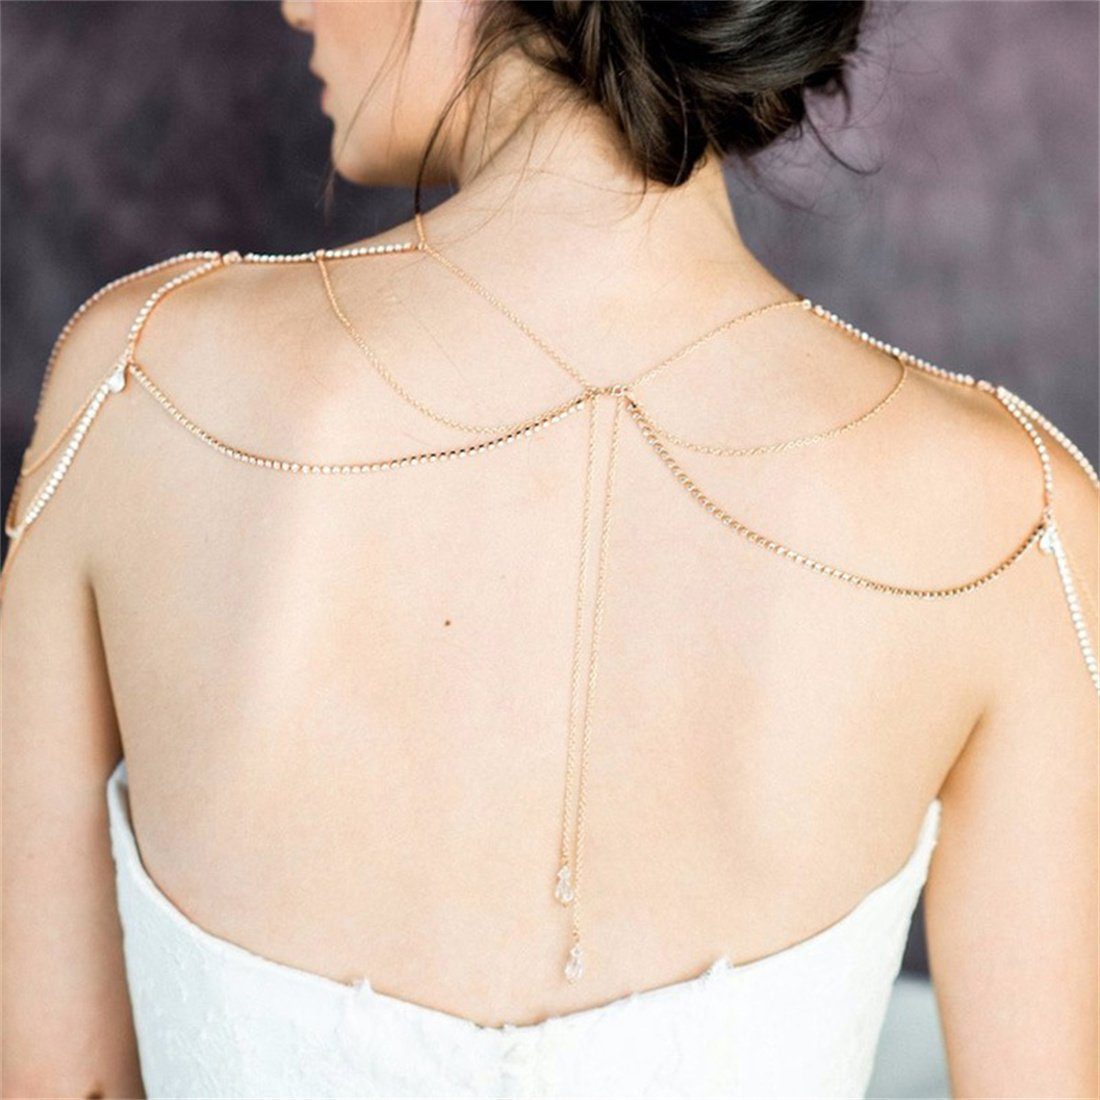 Mehrschichtige Charm-Kette Zubehör,Brautkleid-Körperkette mit Strass-Schulterkette DÖRÖY